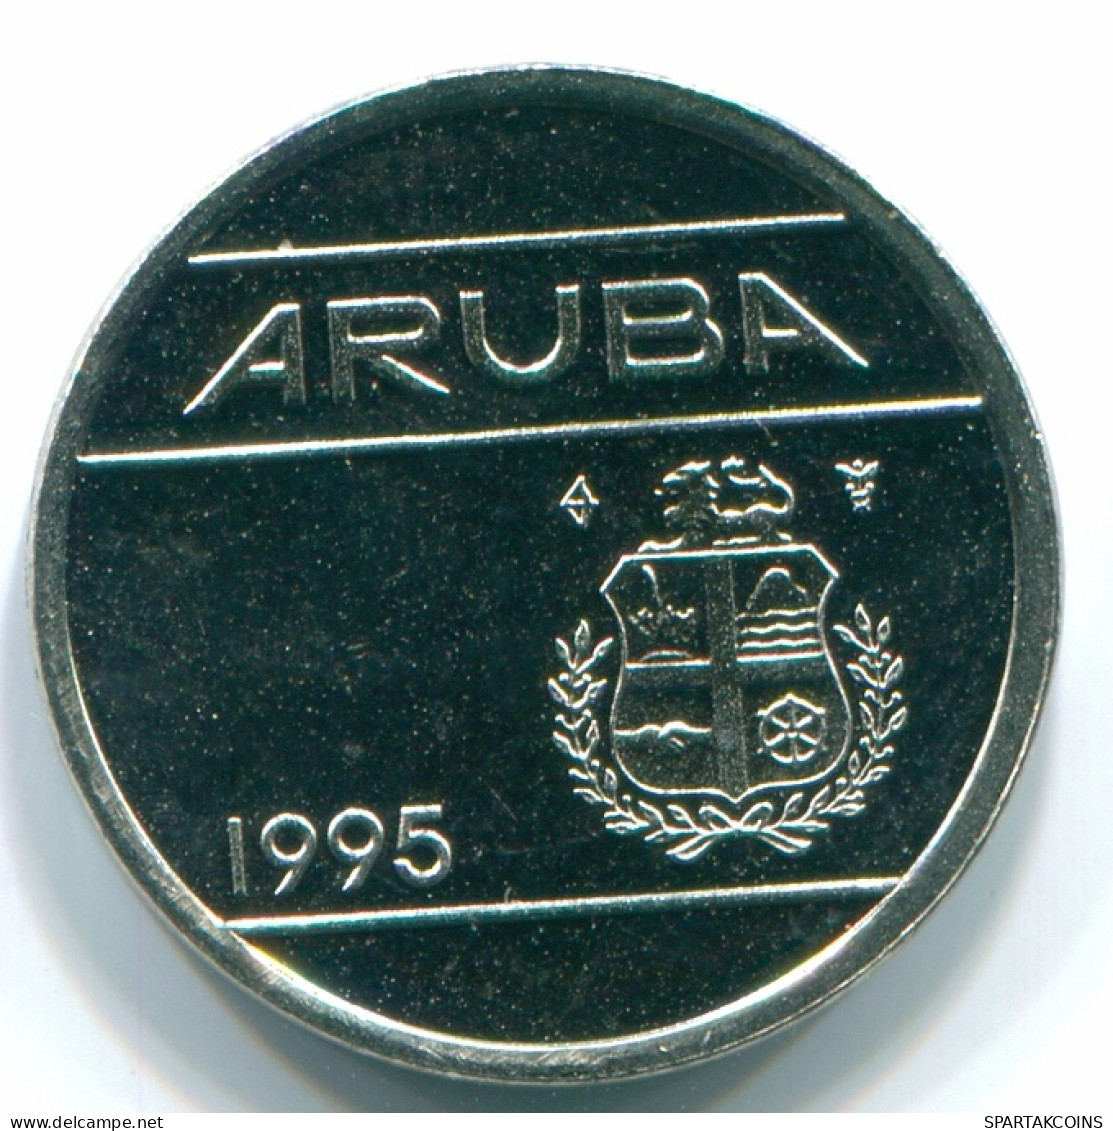 5 CENTS 1995 ARUBA (Netherlands) Nickel Colonial Coin #S13622.U - Aruba